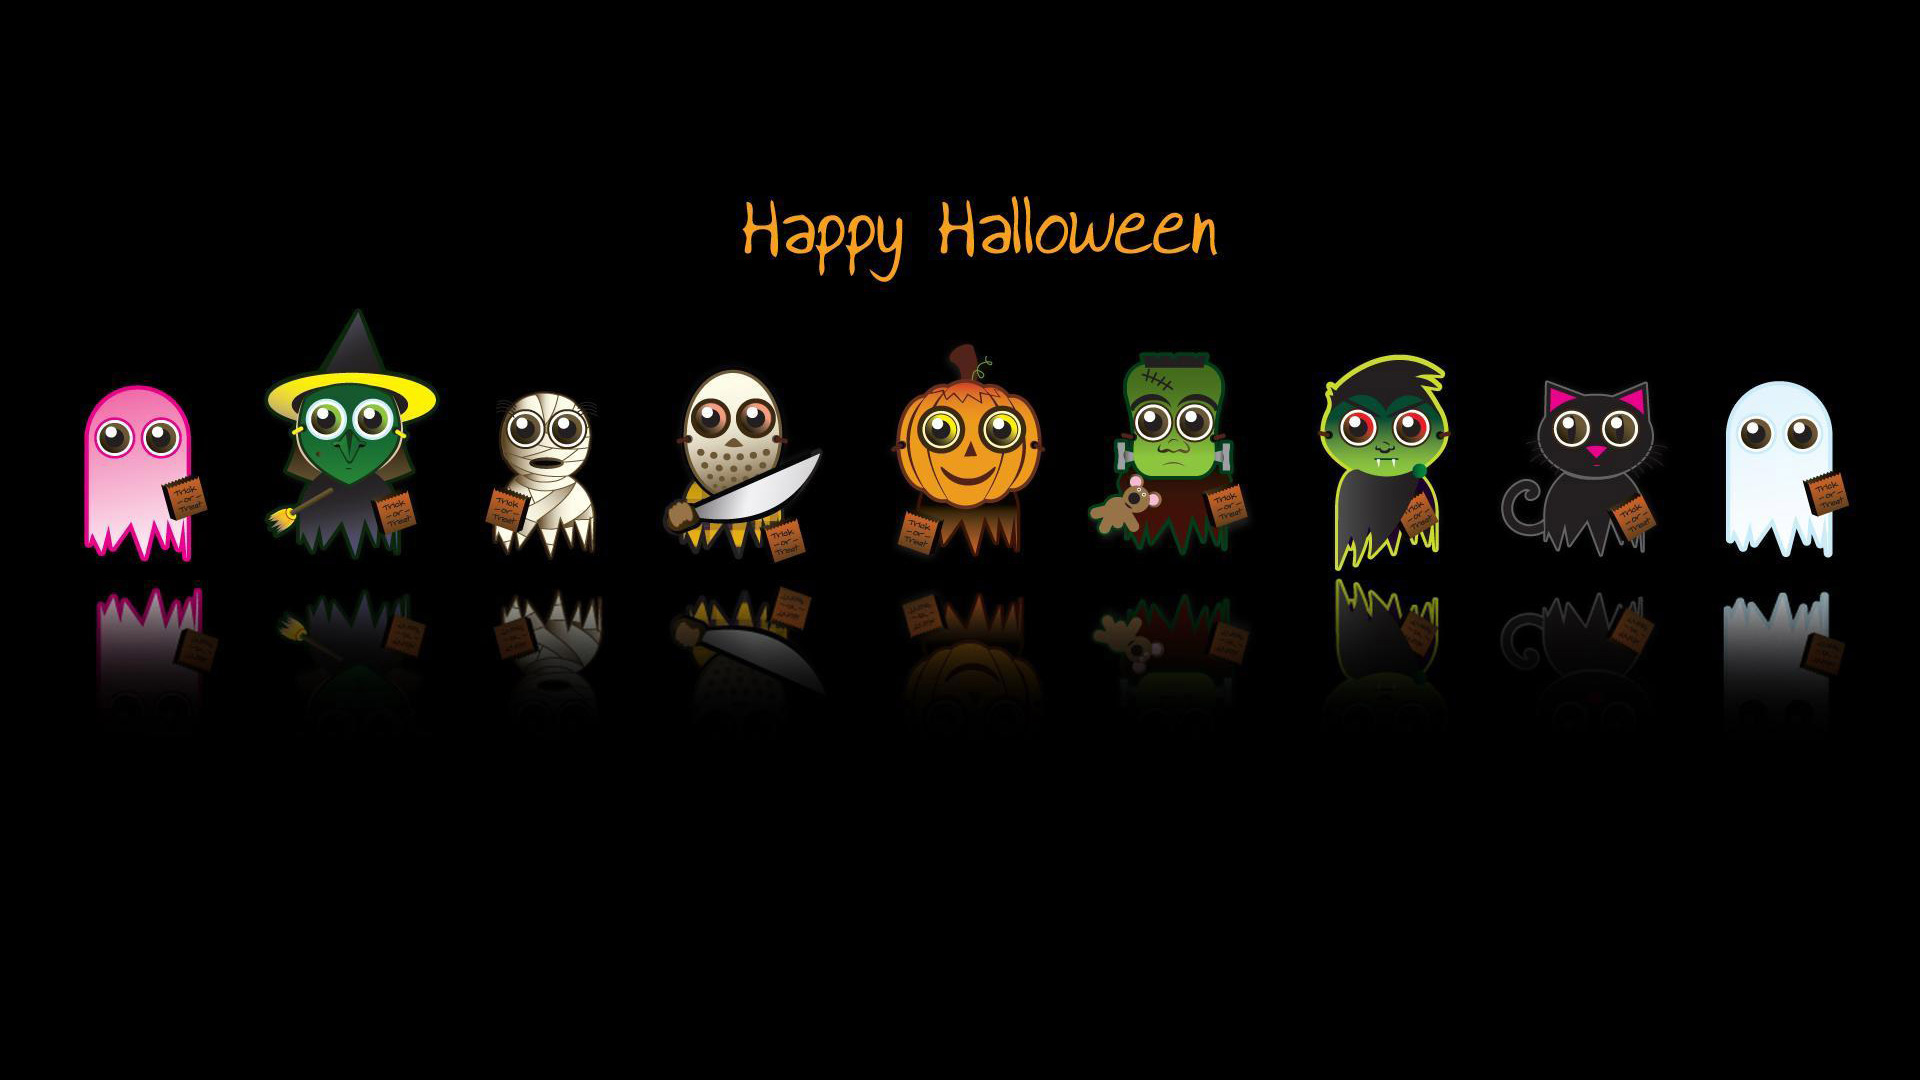 Halloween Desktop Wallpaper In HD